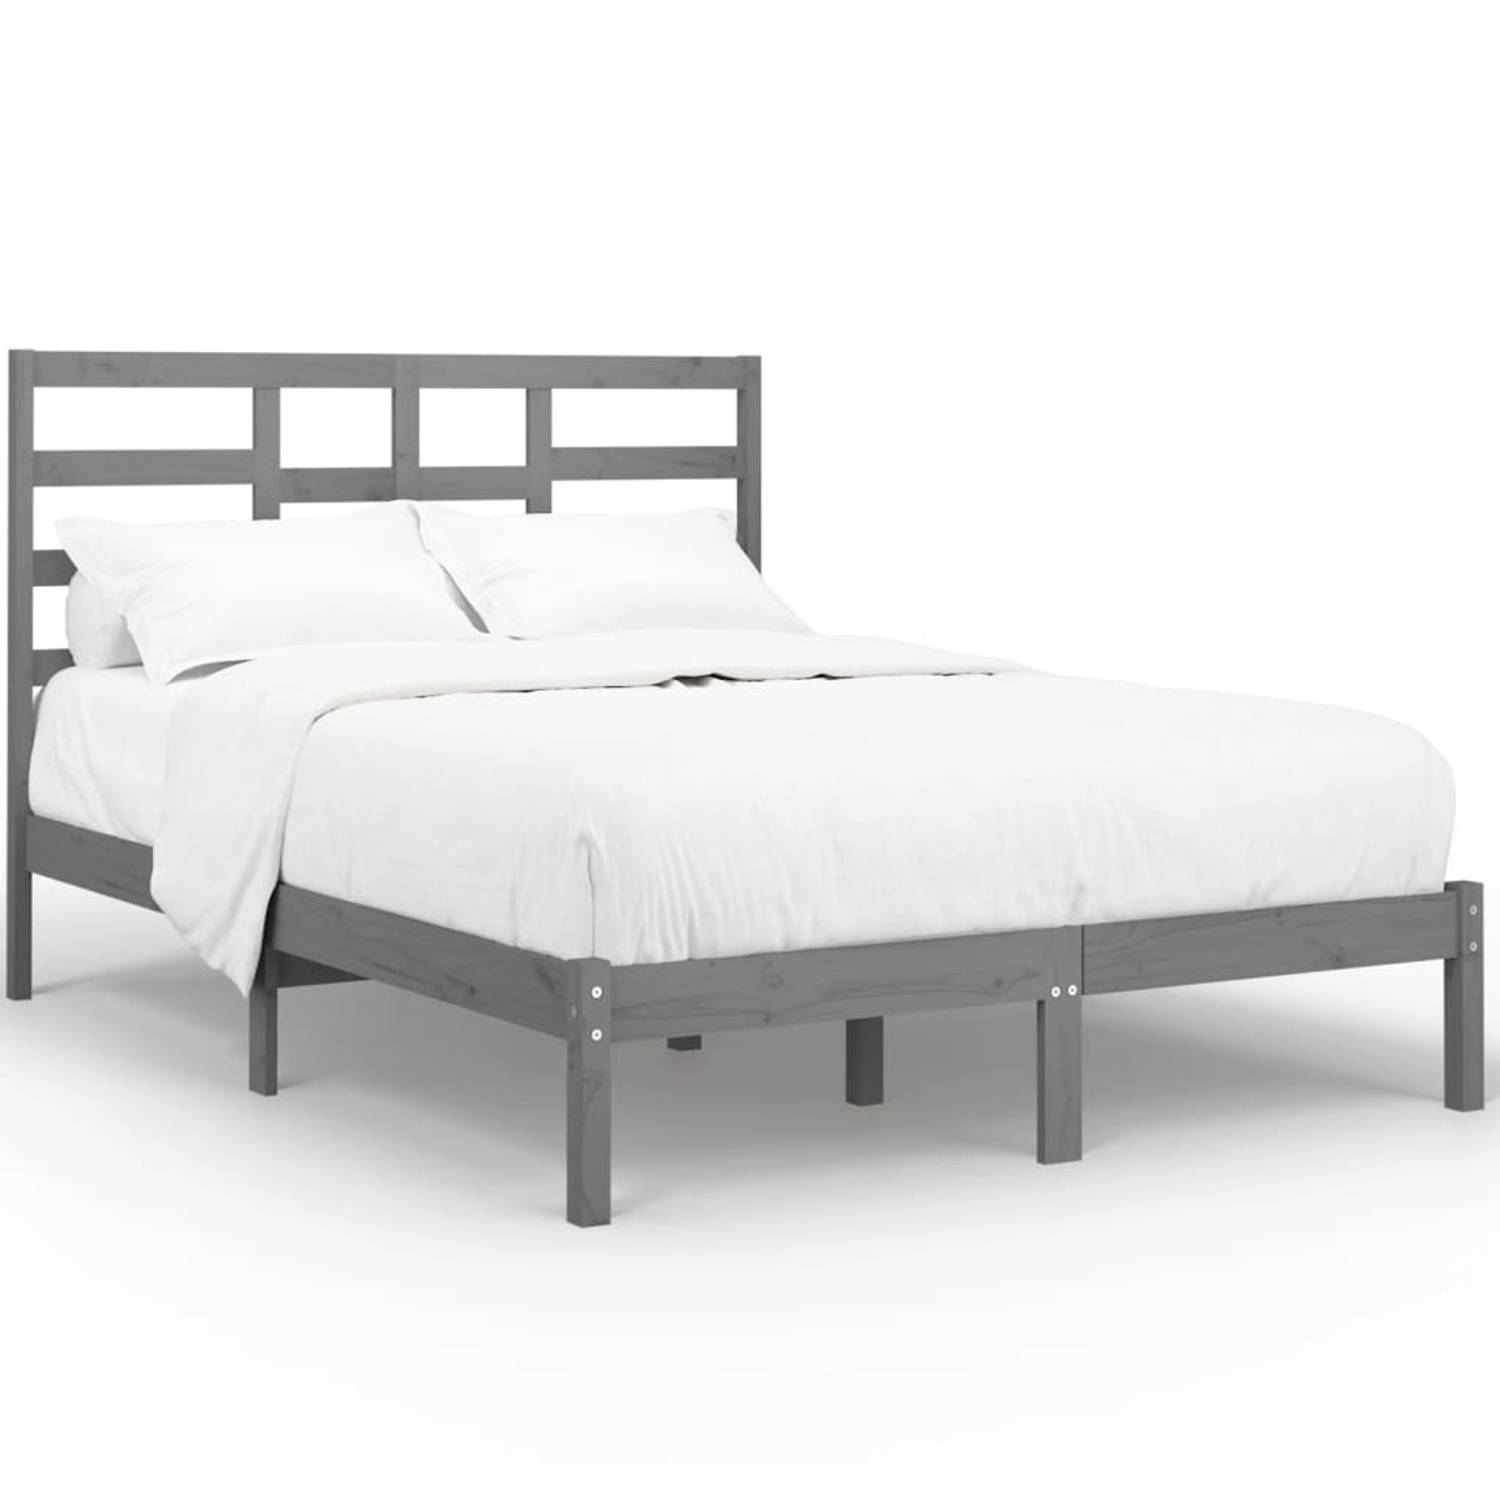 The Living Store Bedframe massief hout grijs 140x200 cm - Bedframe - Bedframes - Bed - Bedbodem - Ledikant - Bed Frame - Massief Houten Bedframe - Slaapmeubel - Tweepersoonsbed - B